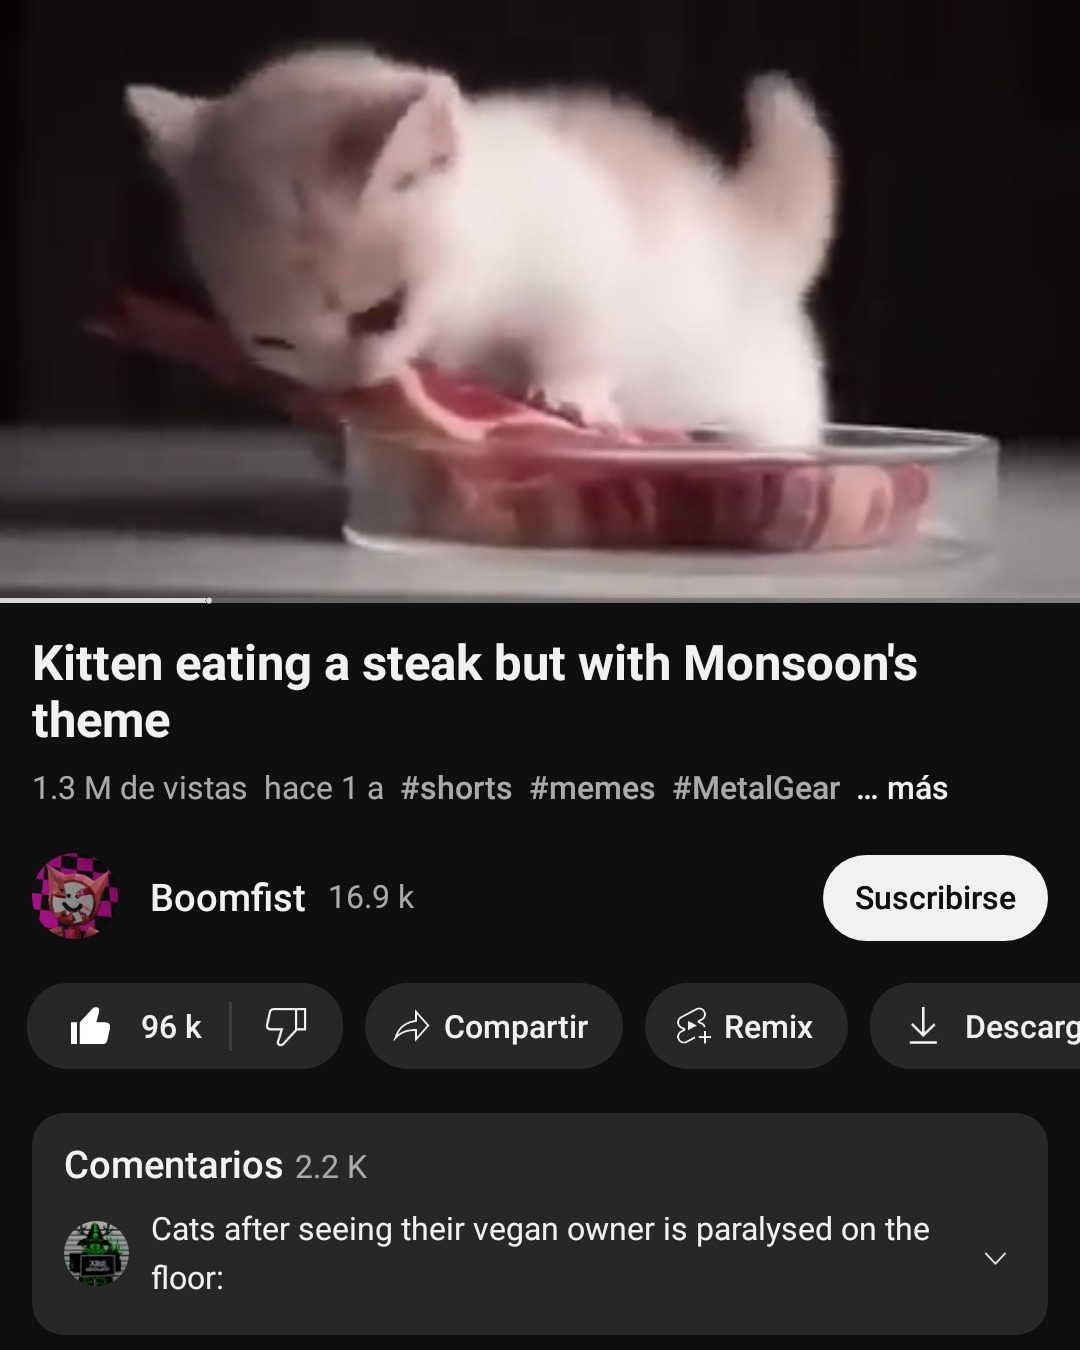 Traduccion:Gatos despues de ver a su dueño vegano paralizado en el suelo - meme